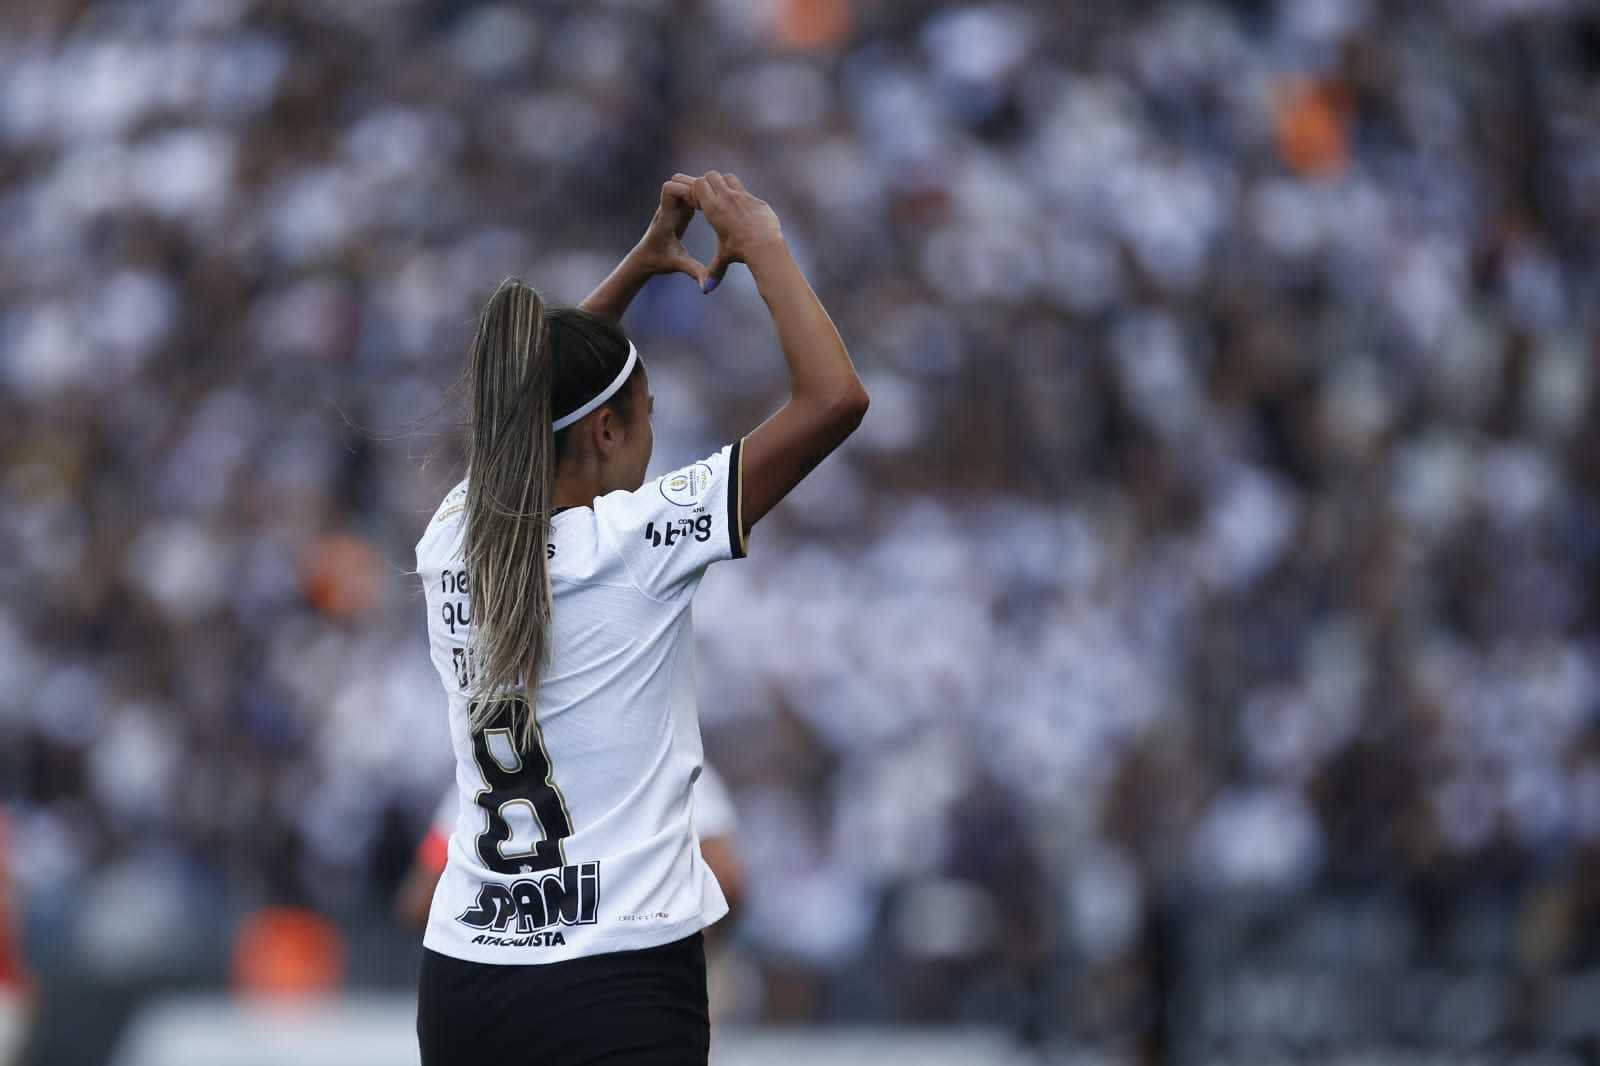 Com recorde de público, Corinthians é tricampeão paulista feminino